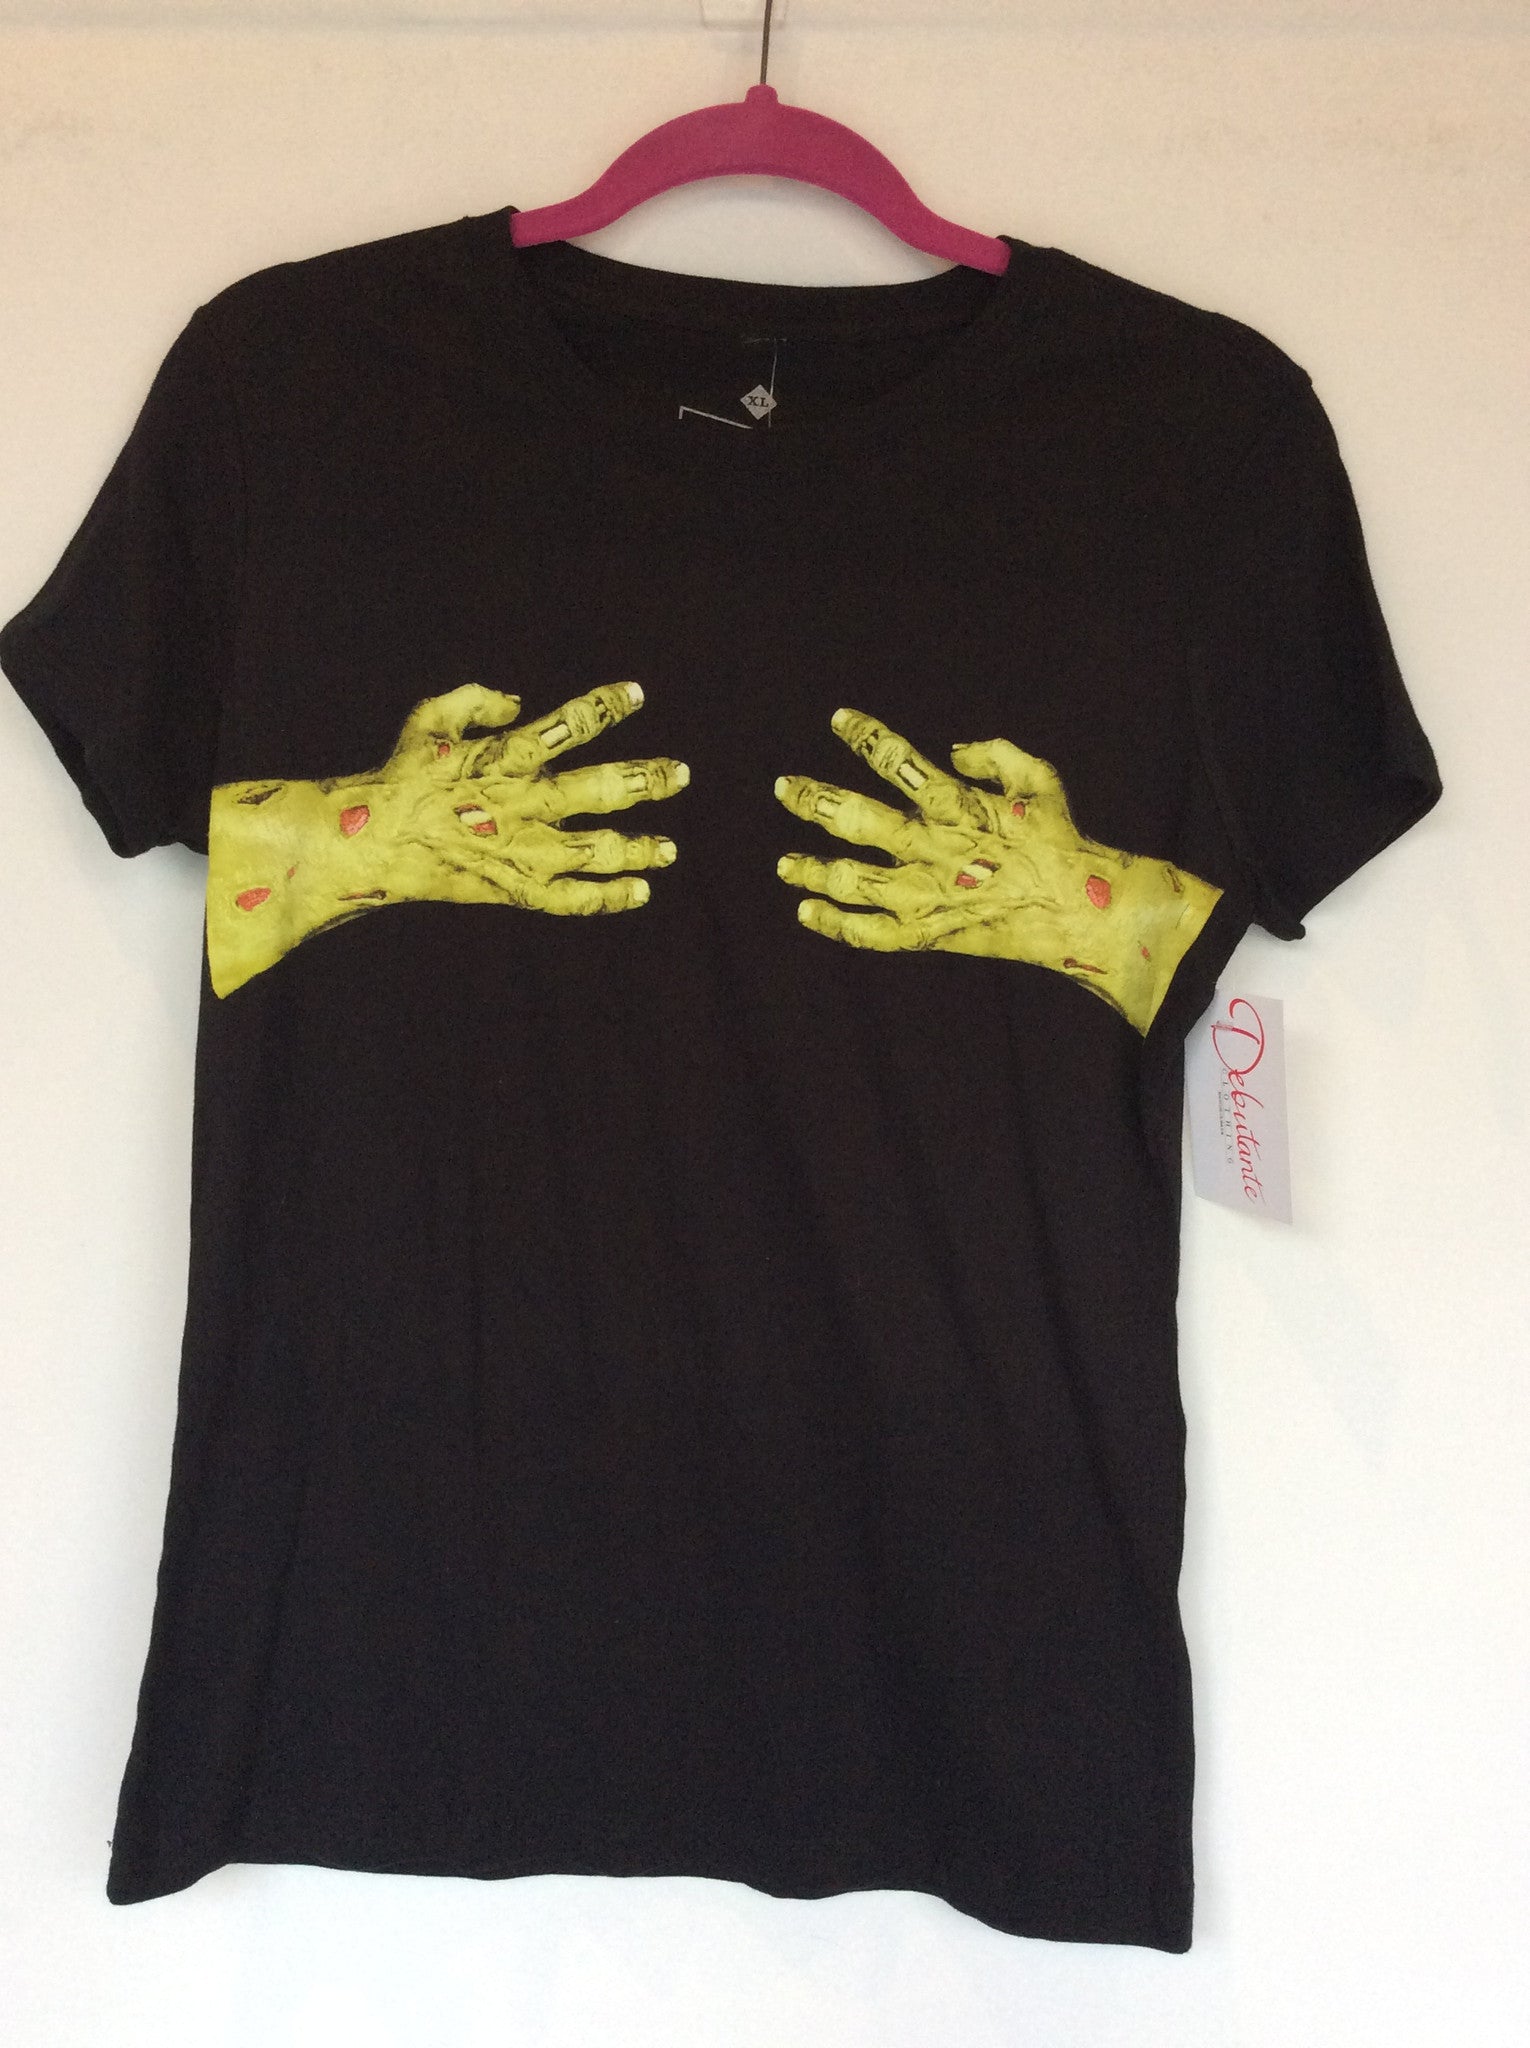 Steady Monster Hands T-shirt